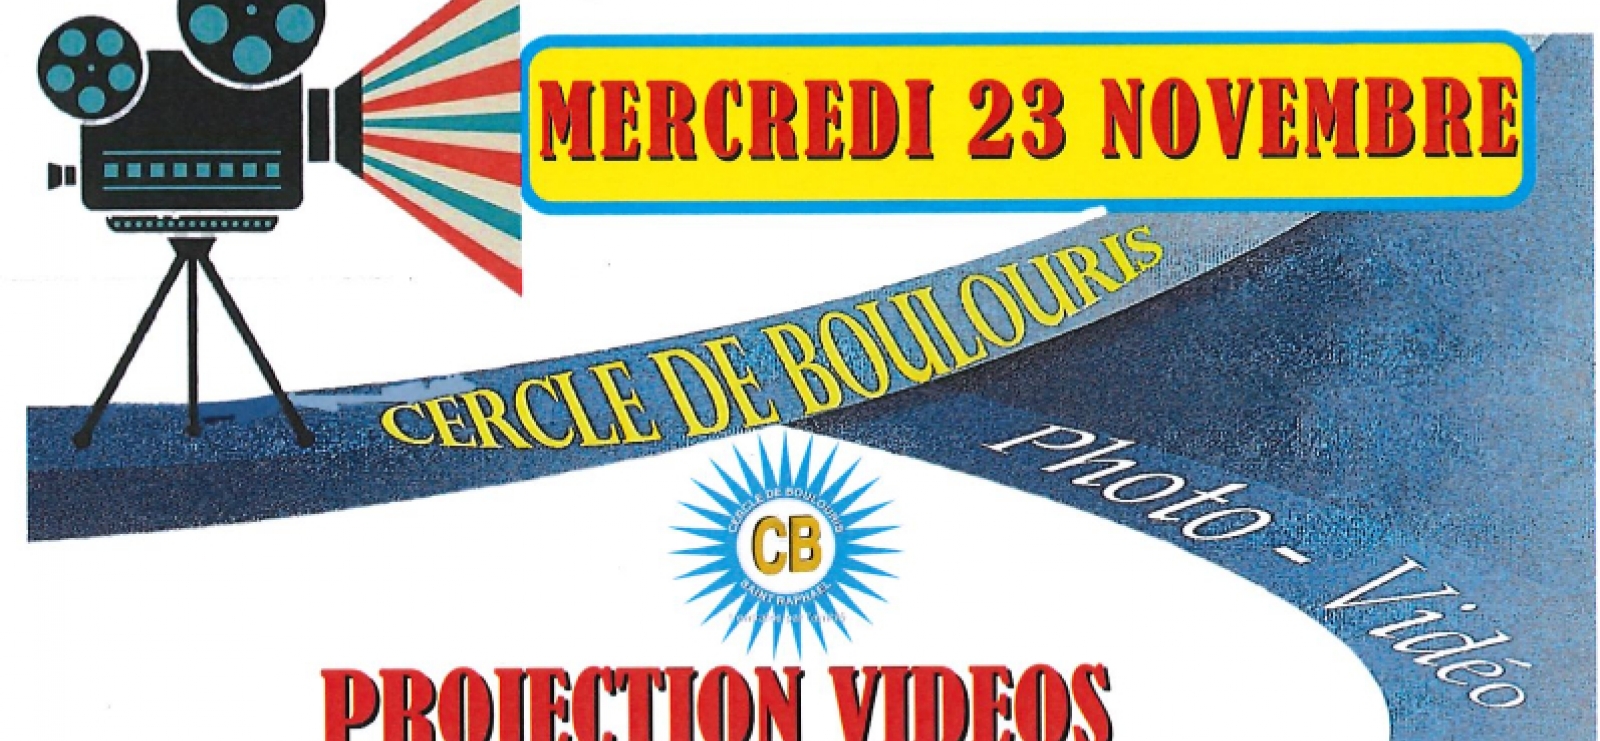 Projection Vidéos du Cercle de Boulouris